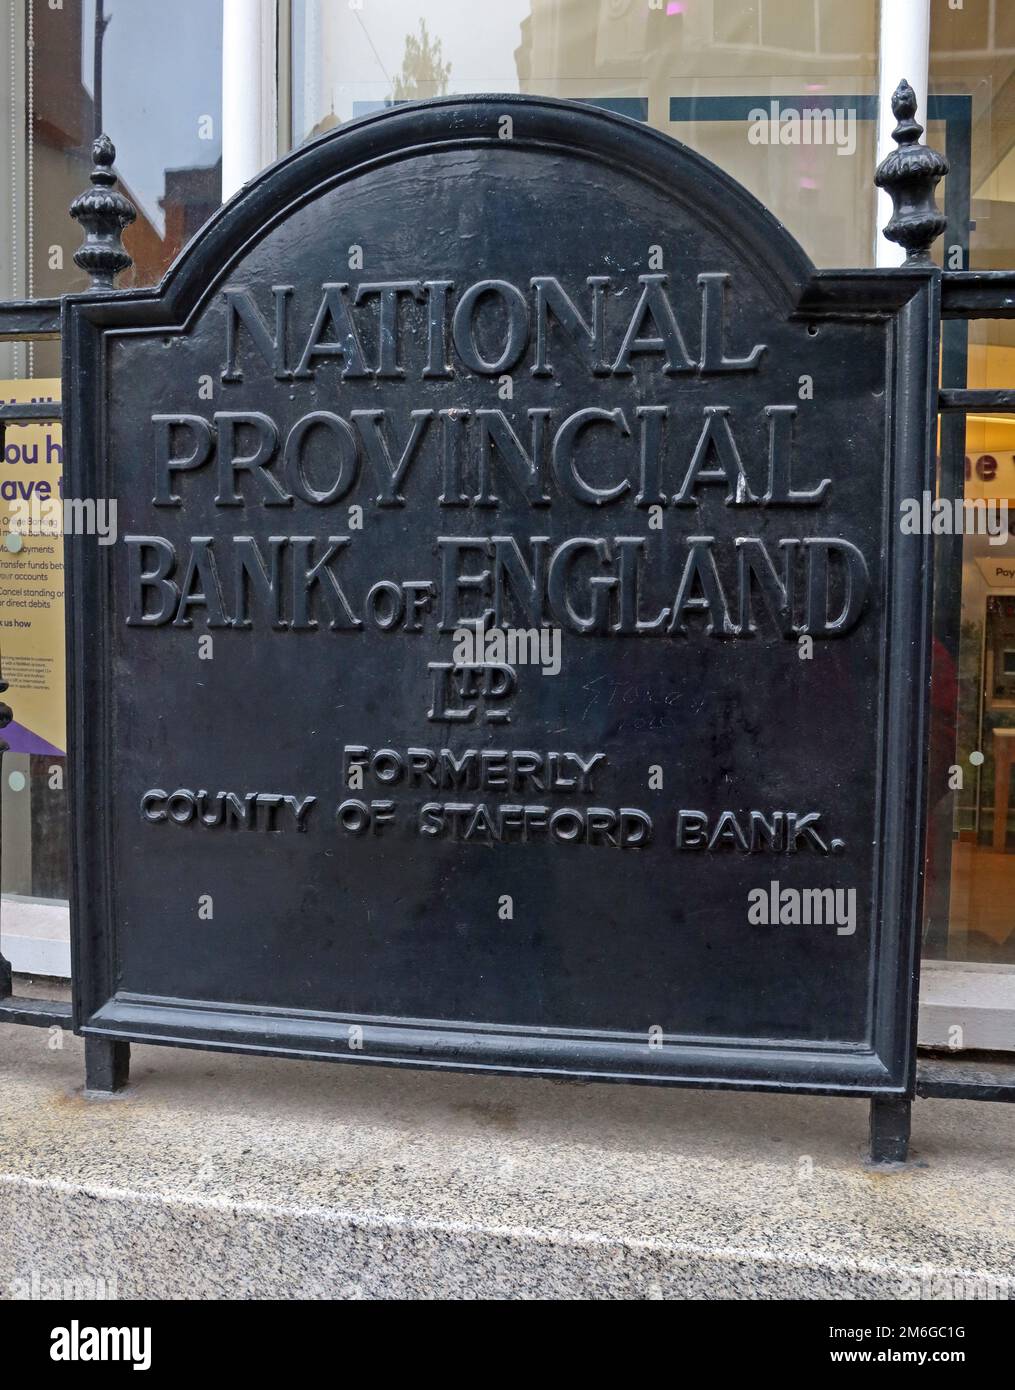 Panneau montrant National provincial Bank England, anciennement comté de Stafford Bank (NatWest), Queen Square, Wolverhampton, Angleterre, WV1 1TL Banque D'Images